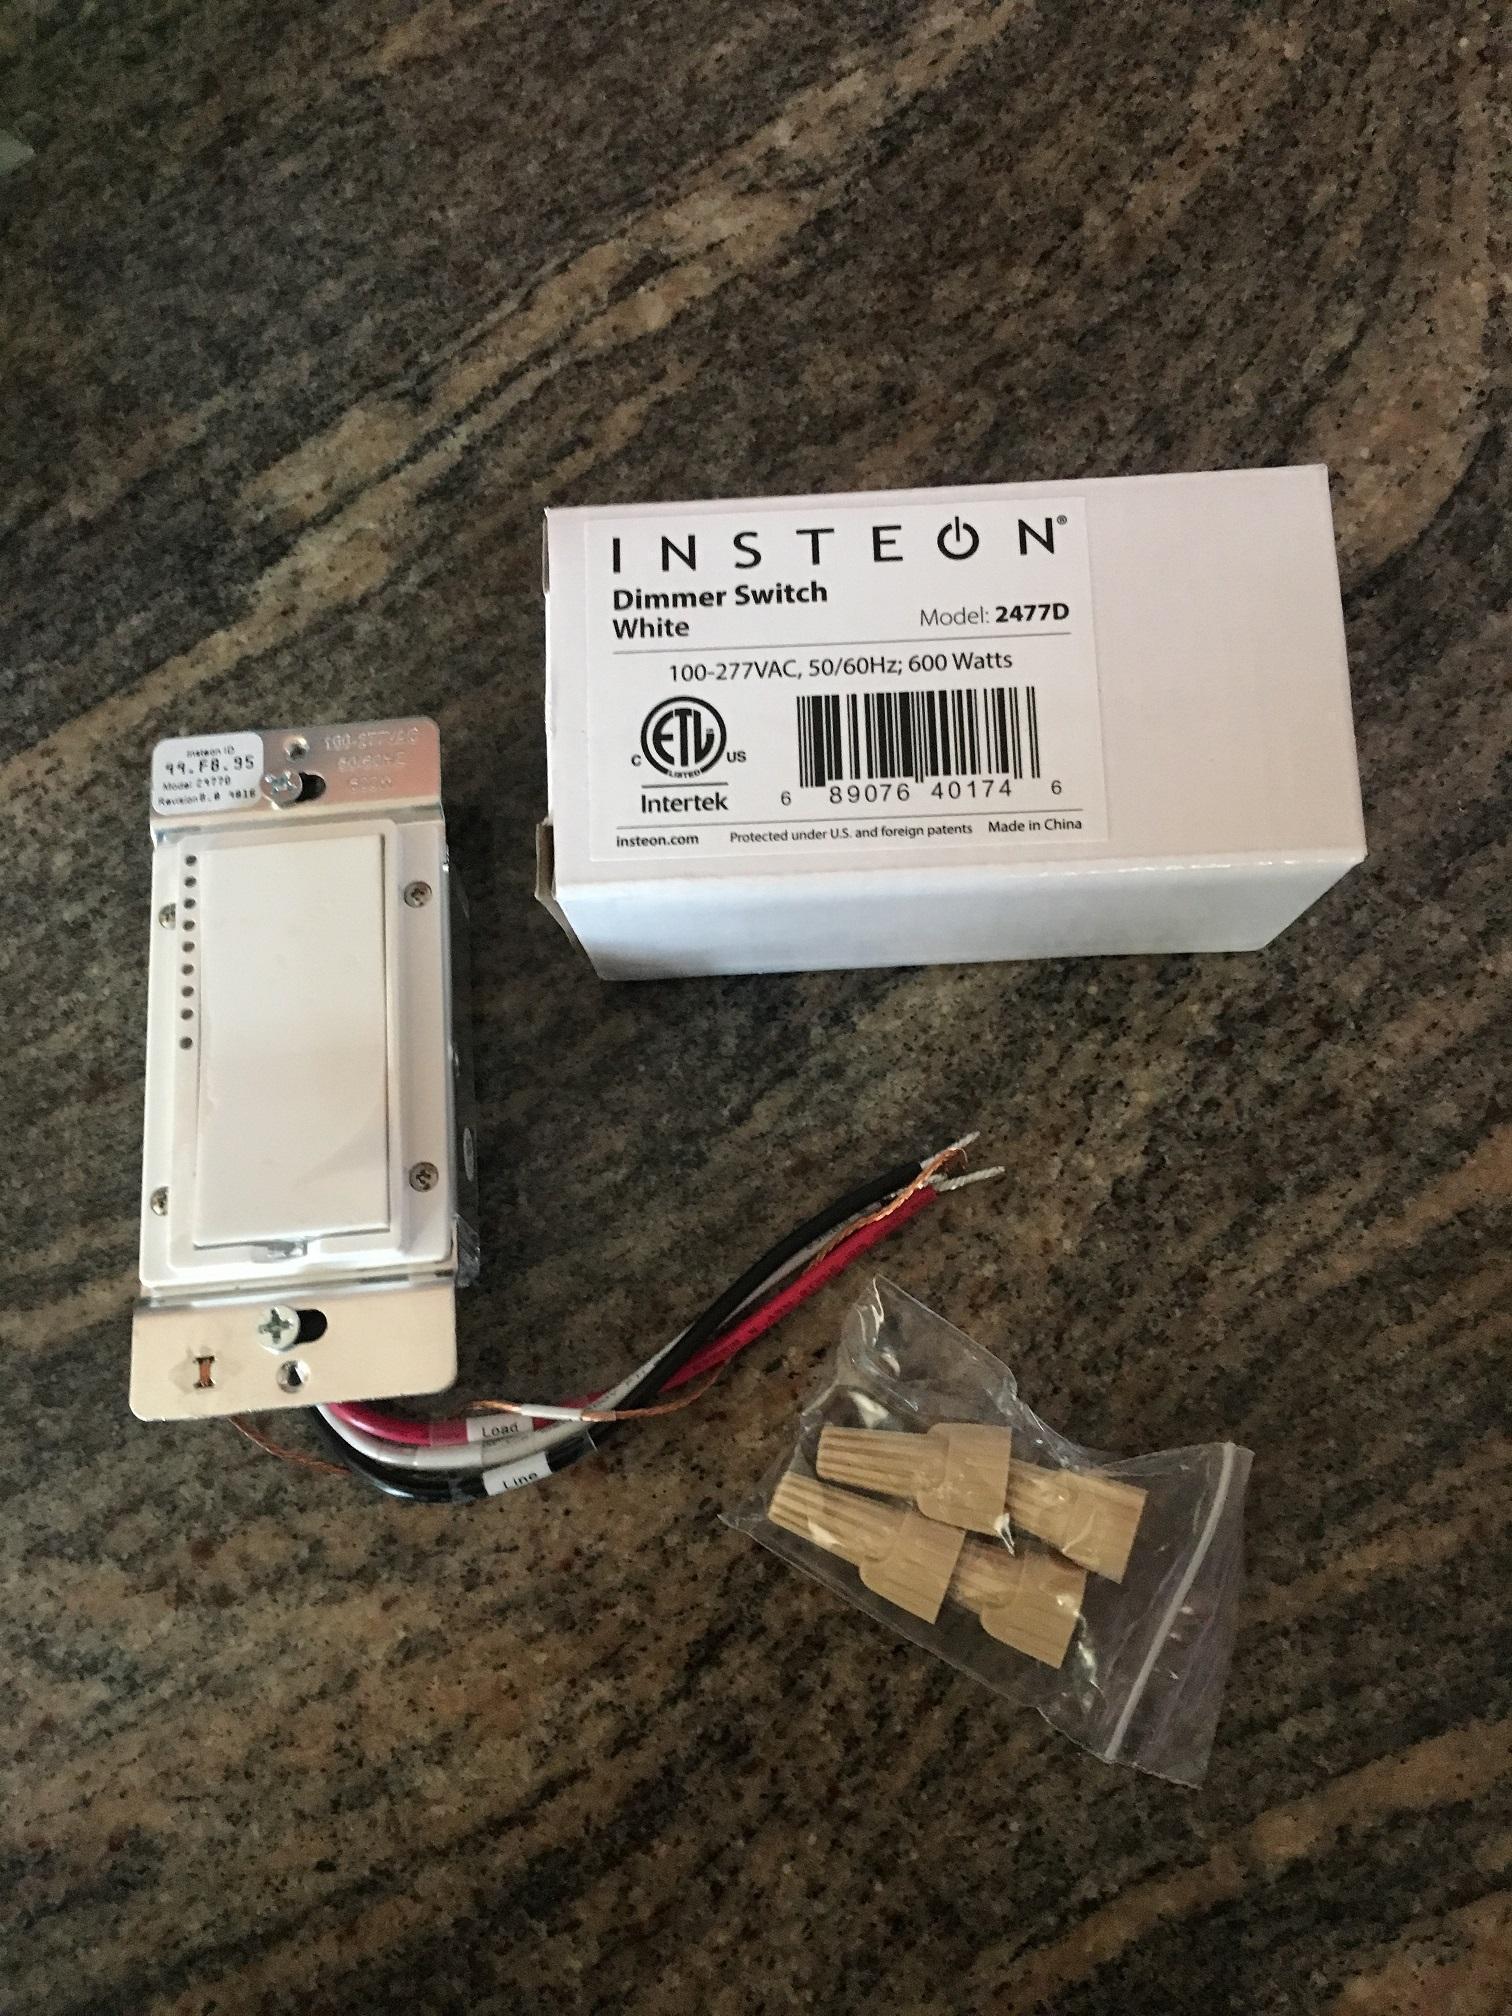 Insteon 3 Way Switch Alternate Wiring Bithead S Blog